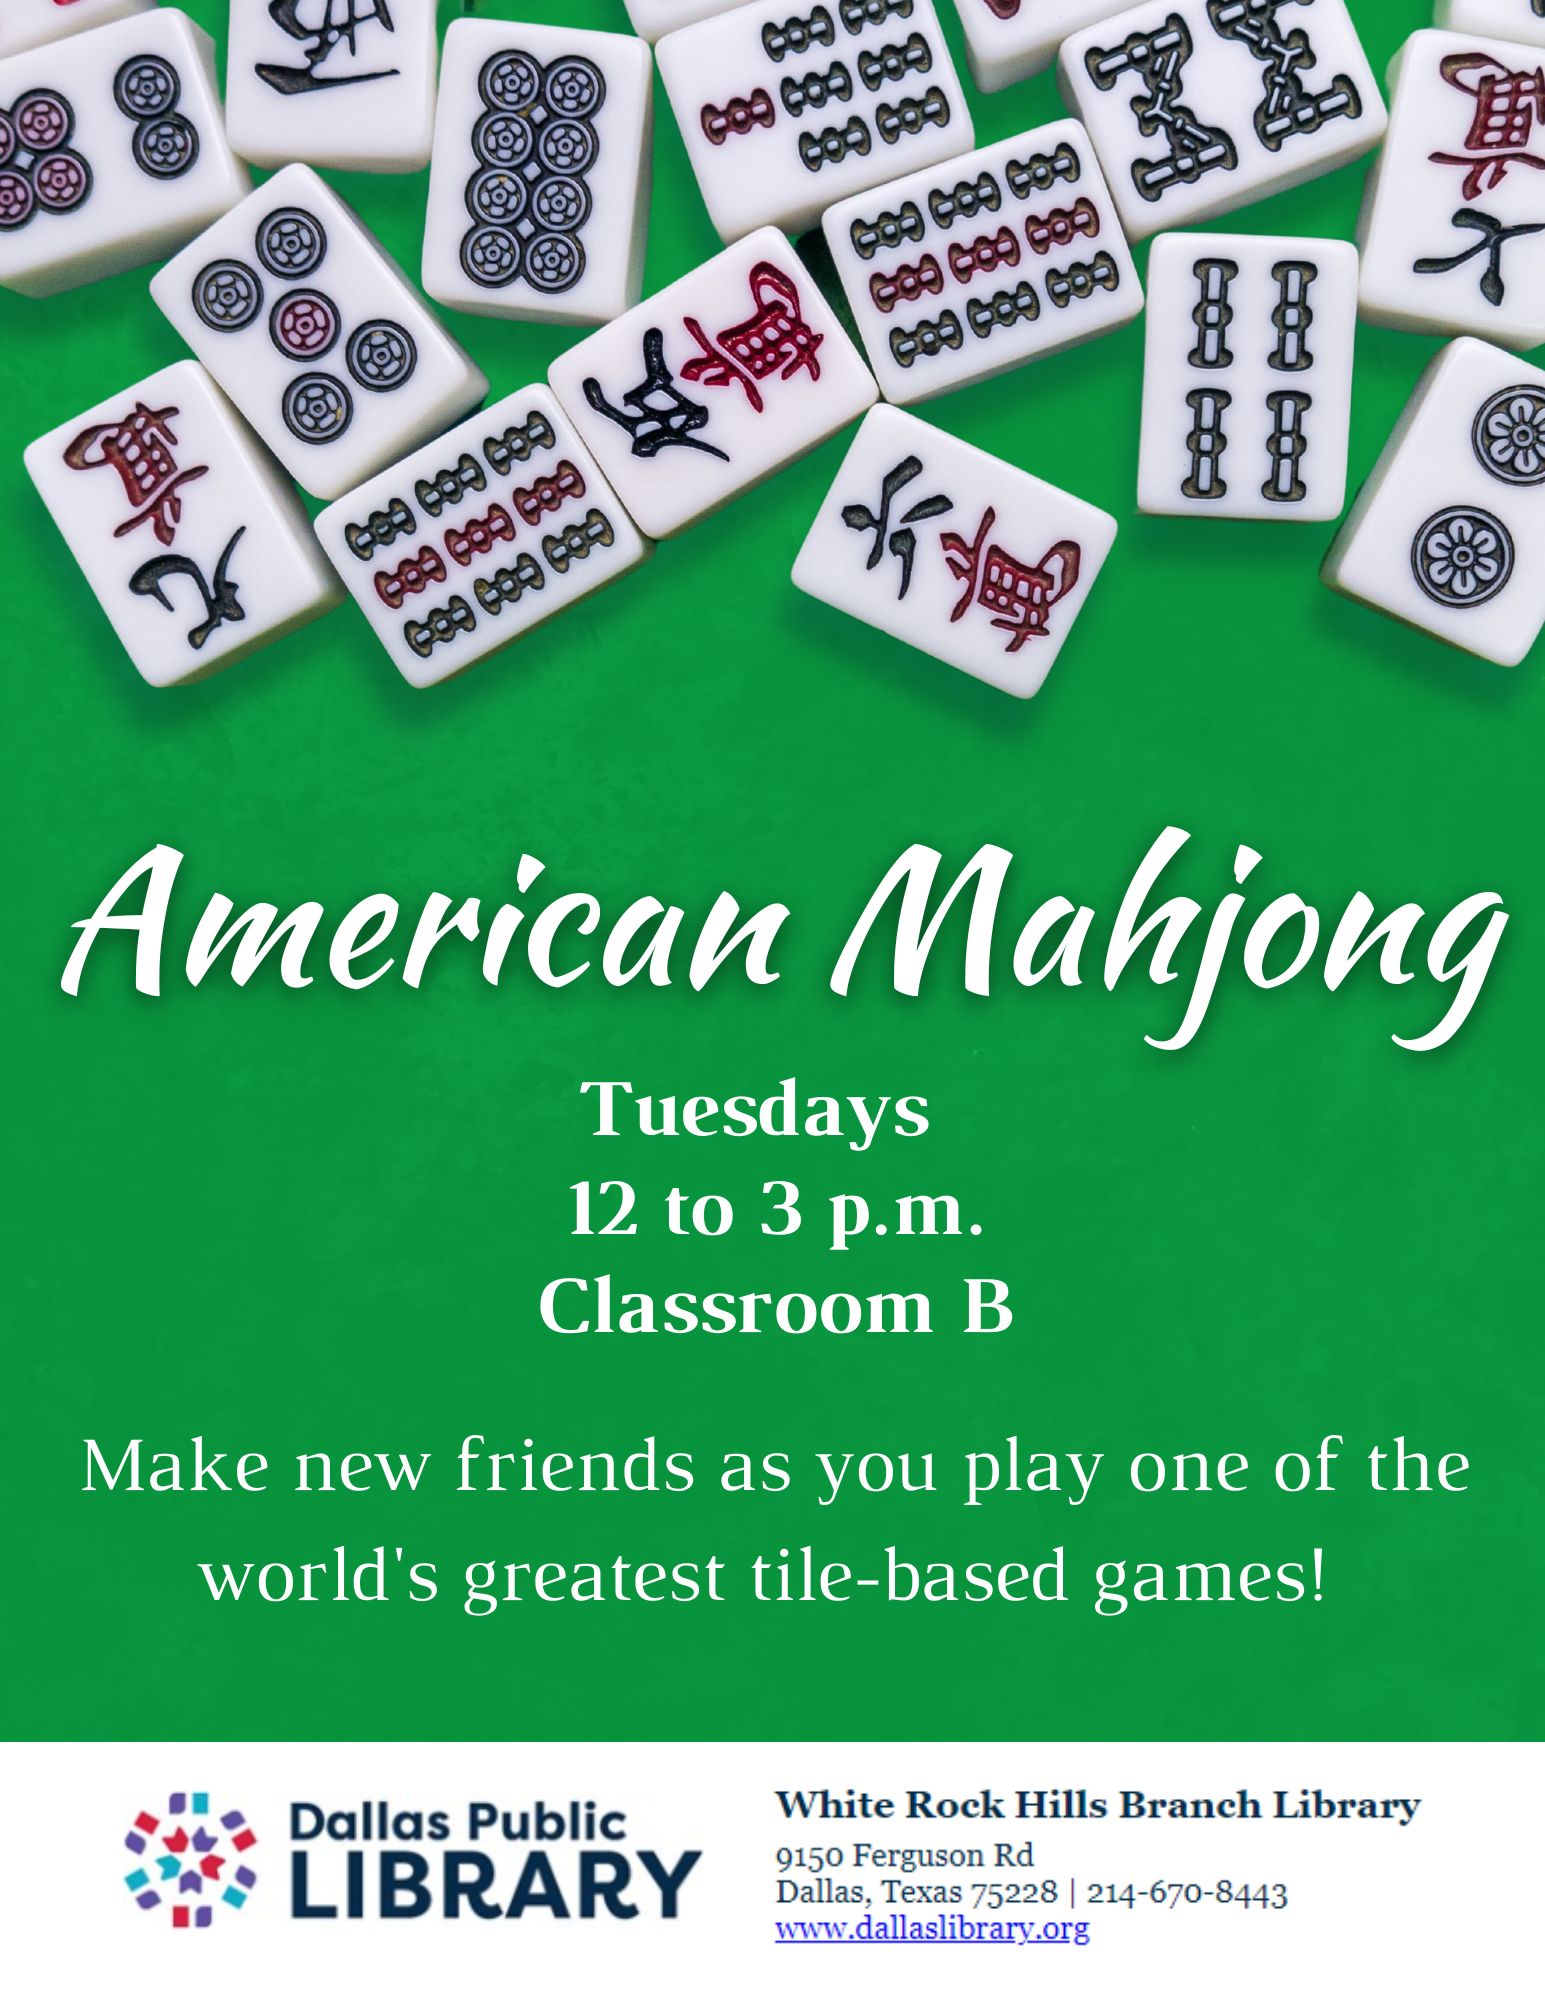 American Mahjong tiles, Tuesdays 12pm-3pm